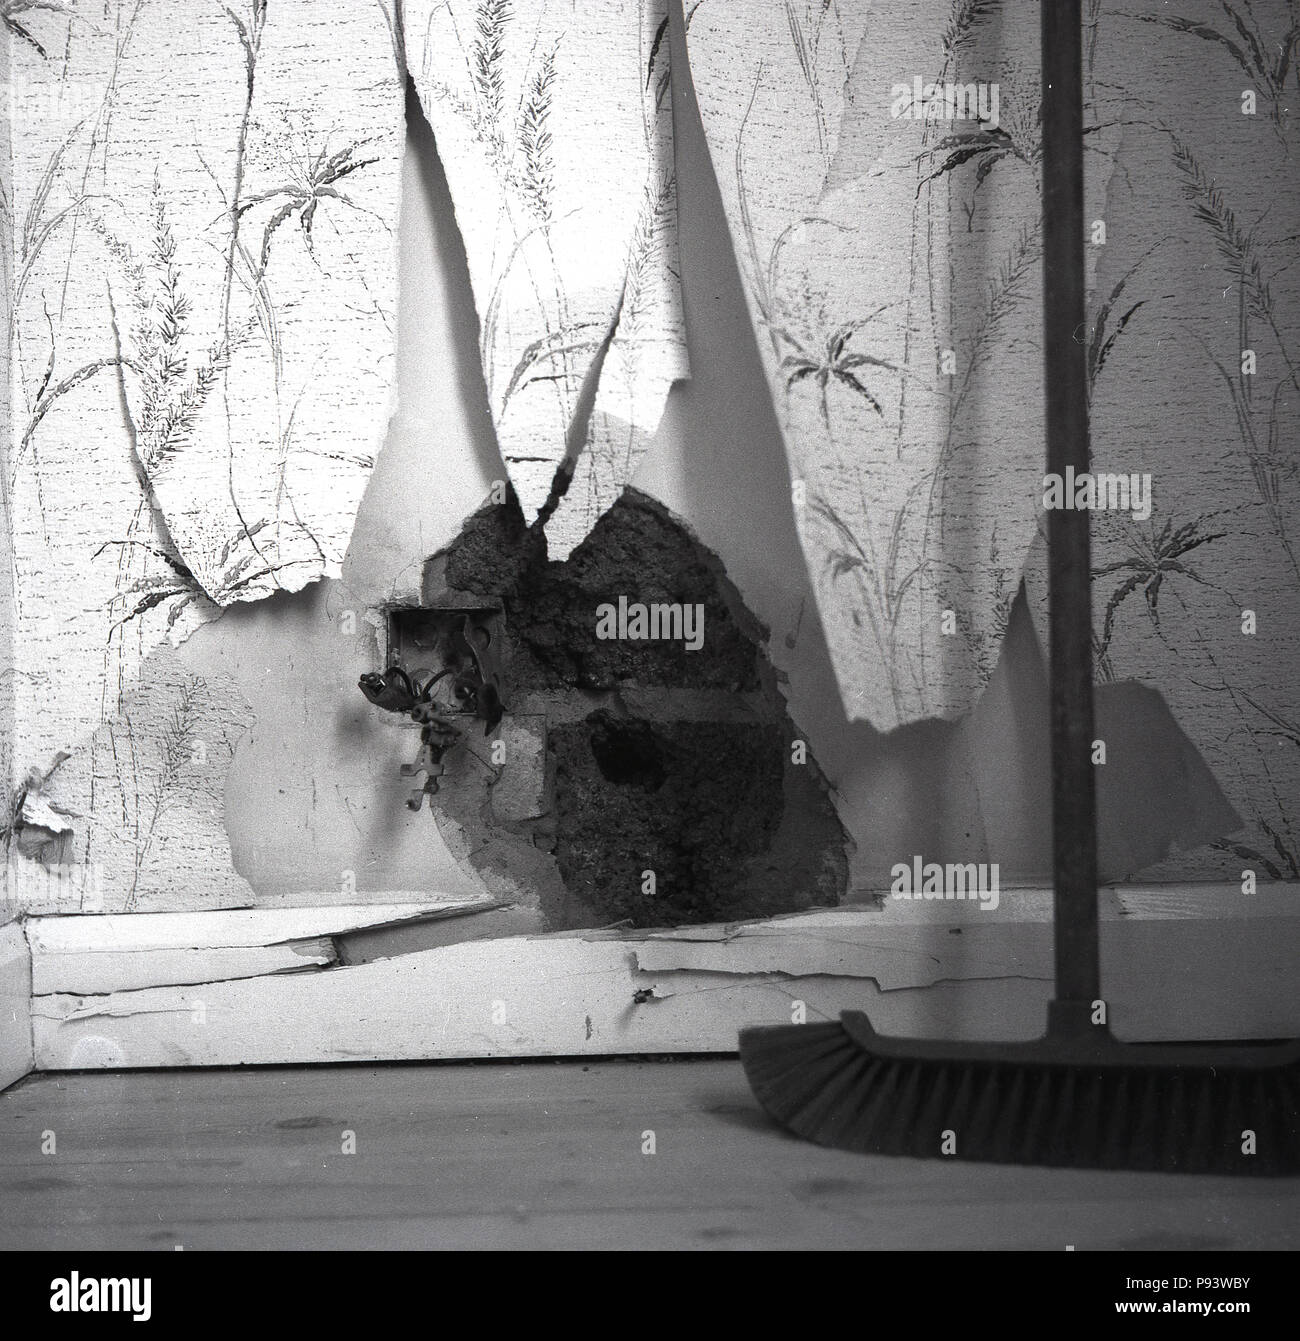 1960, Bild zeigt ein klaffendes Loch in der kaschiervorgänge einer verputzten Wand, zerrissen oder zerfetzte Tapete und Holz- Sockelleisten, die Risse hat sich als Folge von Sturmschäden, England, UK verursacht. Stockfoto